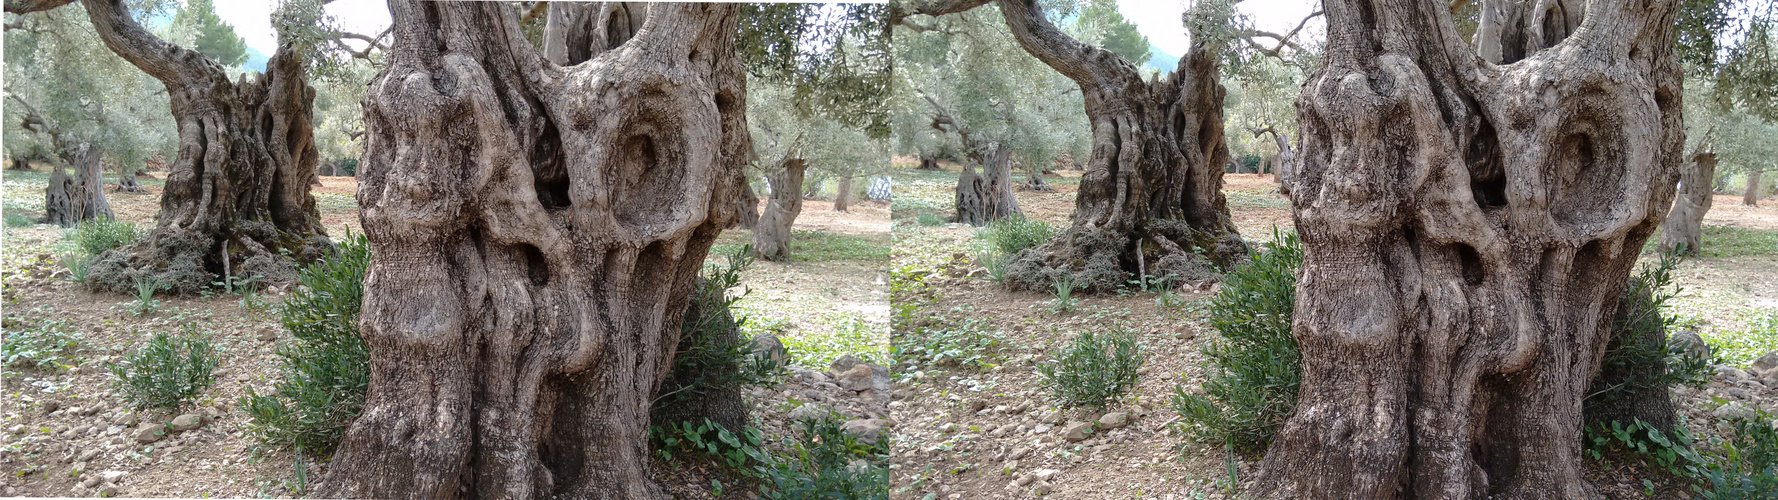 Mallorca-Olivenbaum01 (stereo X)